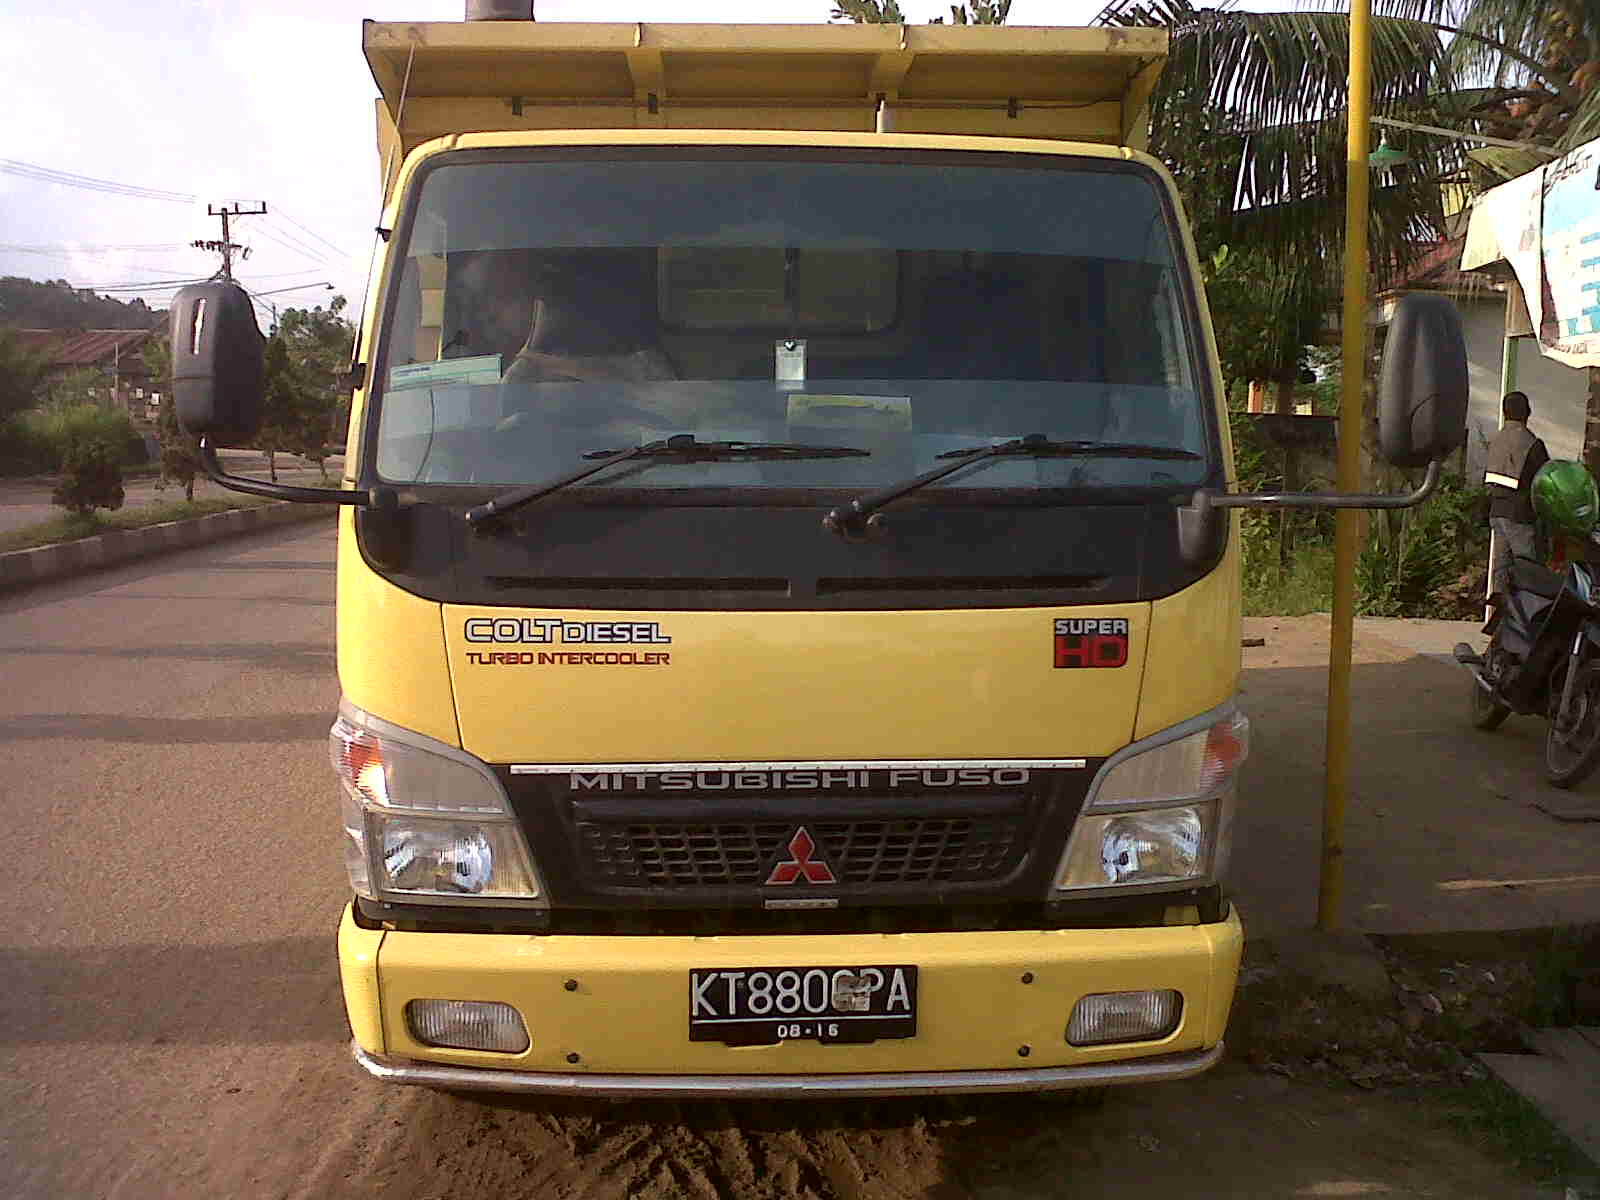 IKLAN BISNIS SAMARINDA Dijual Dump Truck Mitsubishi PS 125HD